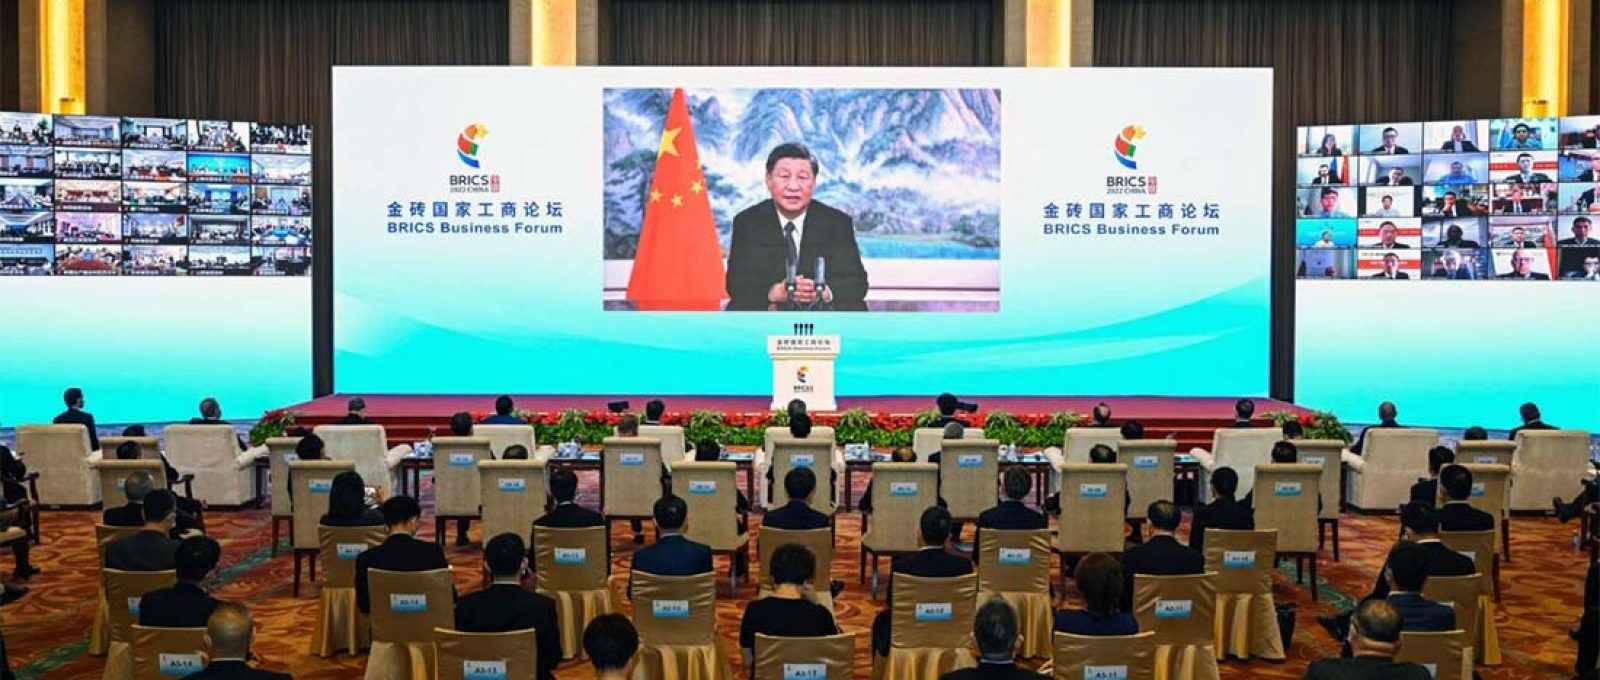 O presidente chinês, Xi Jinping, faz o discurso inaugural do BRICS Business Forum, realizado em 22 de junho de 2022 (Yin Bogu/Xinhua/Alamy).